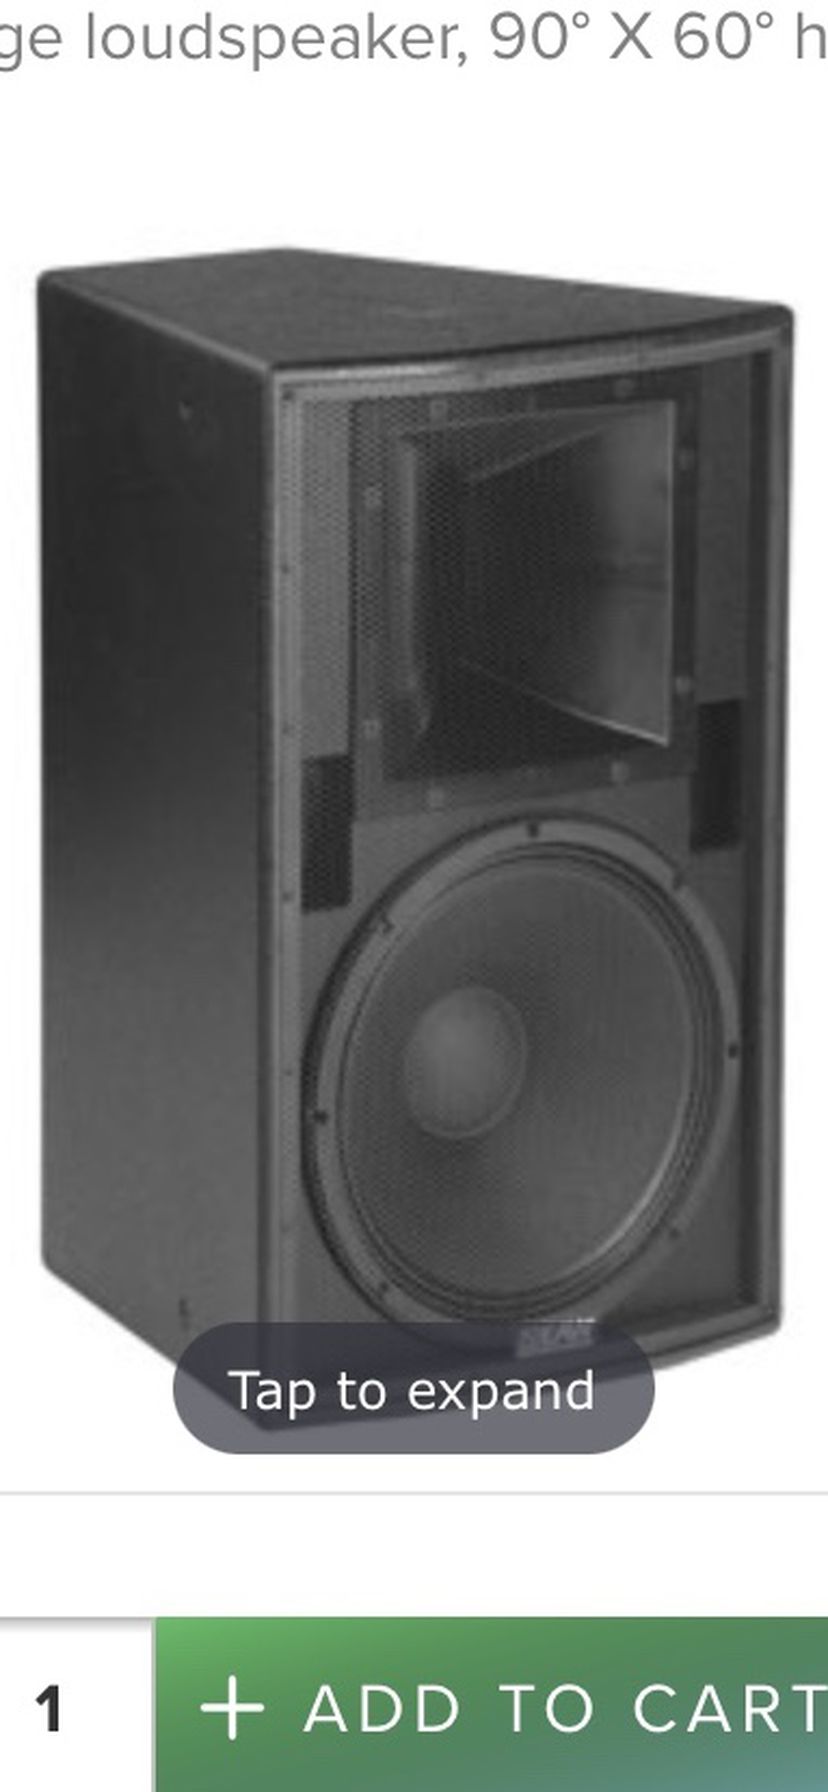 EAW MK5396 loud speaker